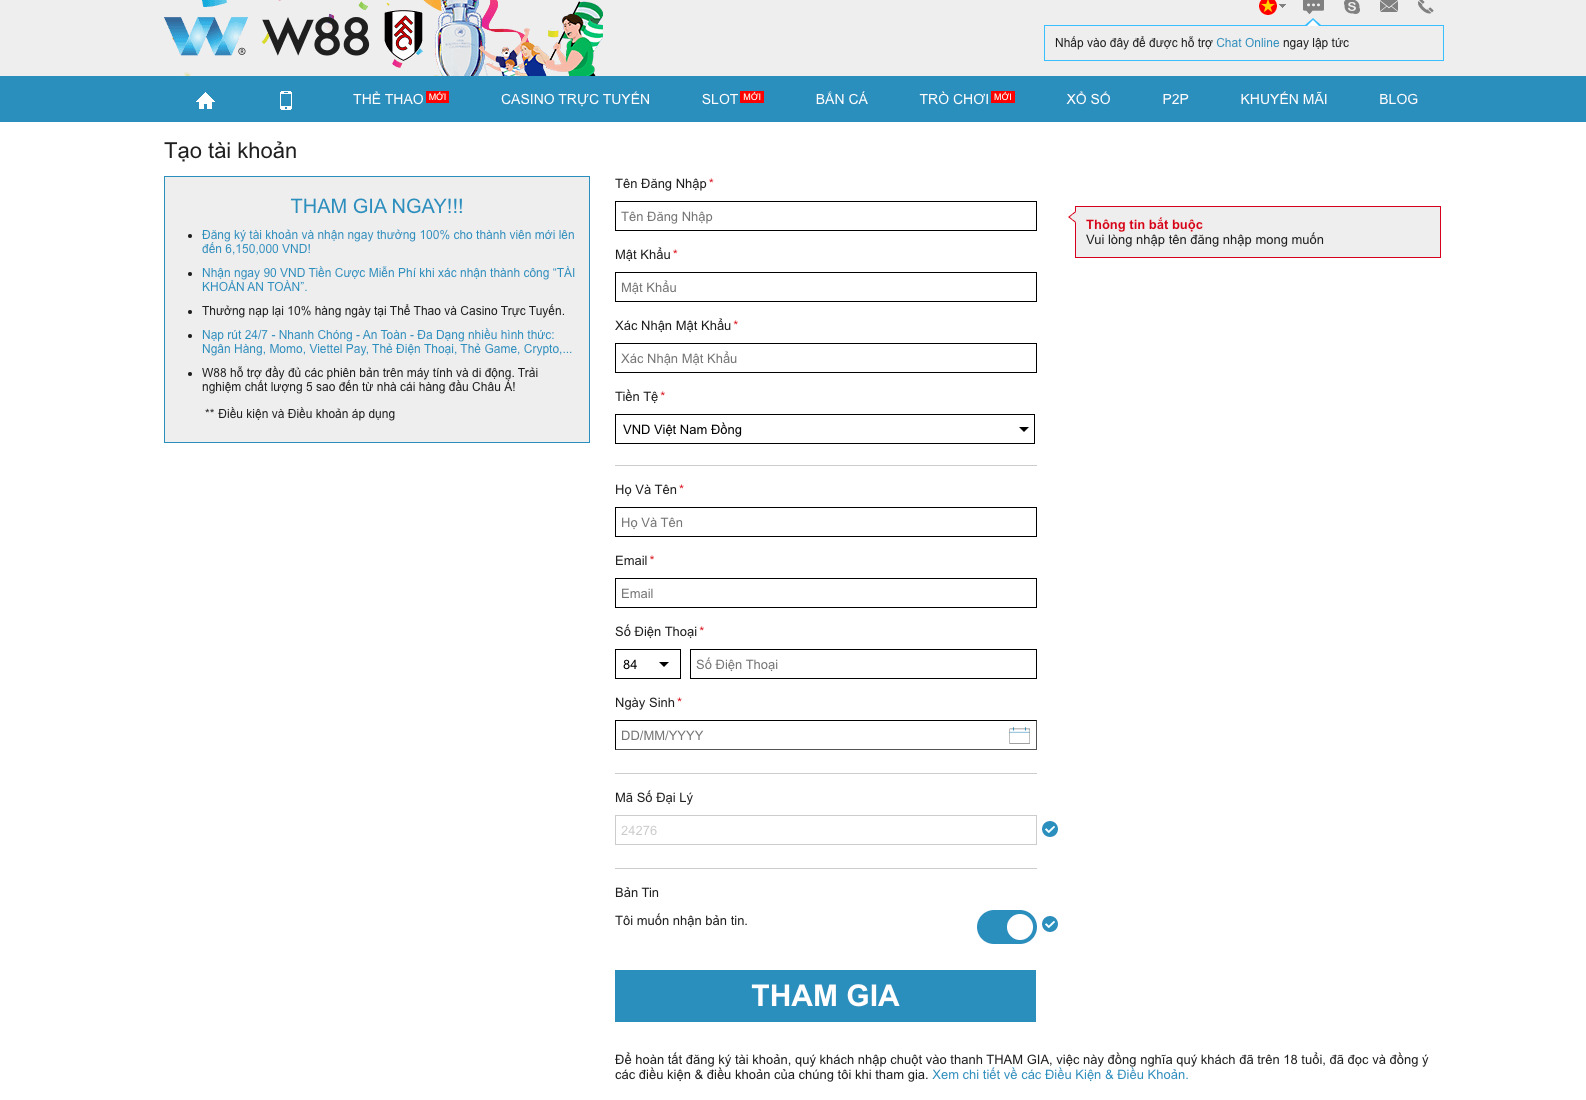 Hoàn thiện thông tin đăng ký nhà cái W88 yêu cầu